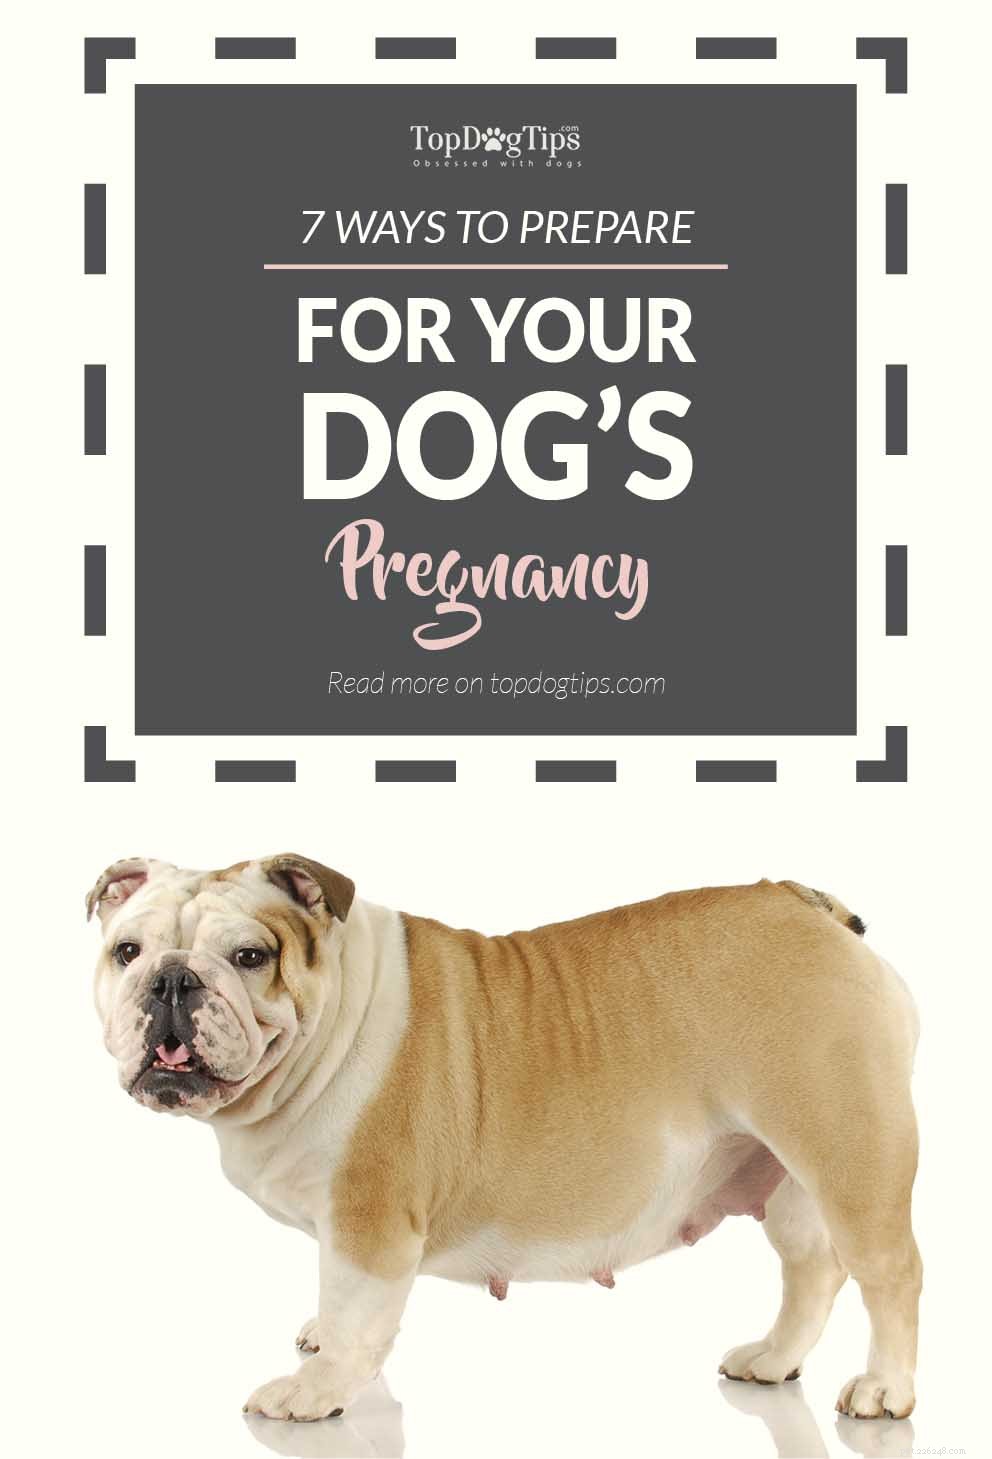 강아지의 임신을 준비하는 방법에 대한 7가지 팁